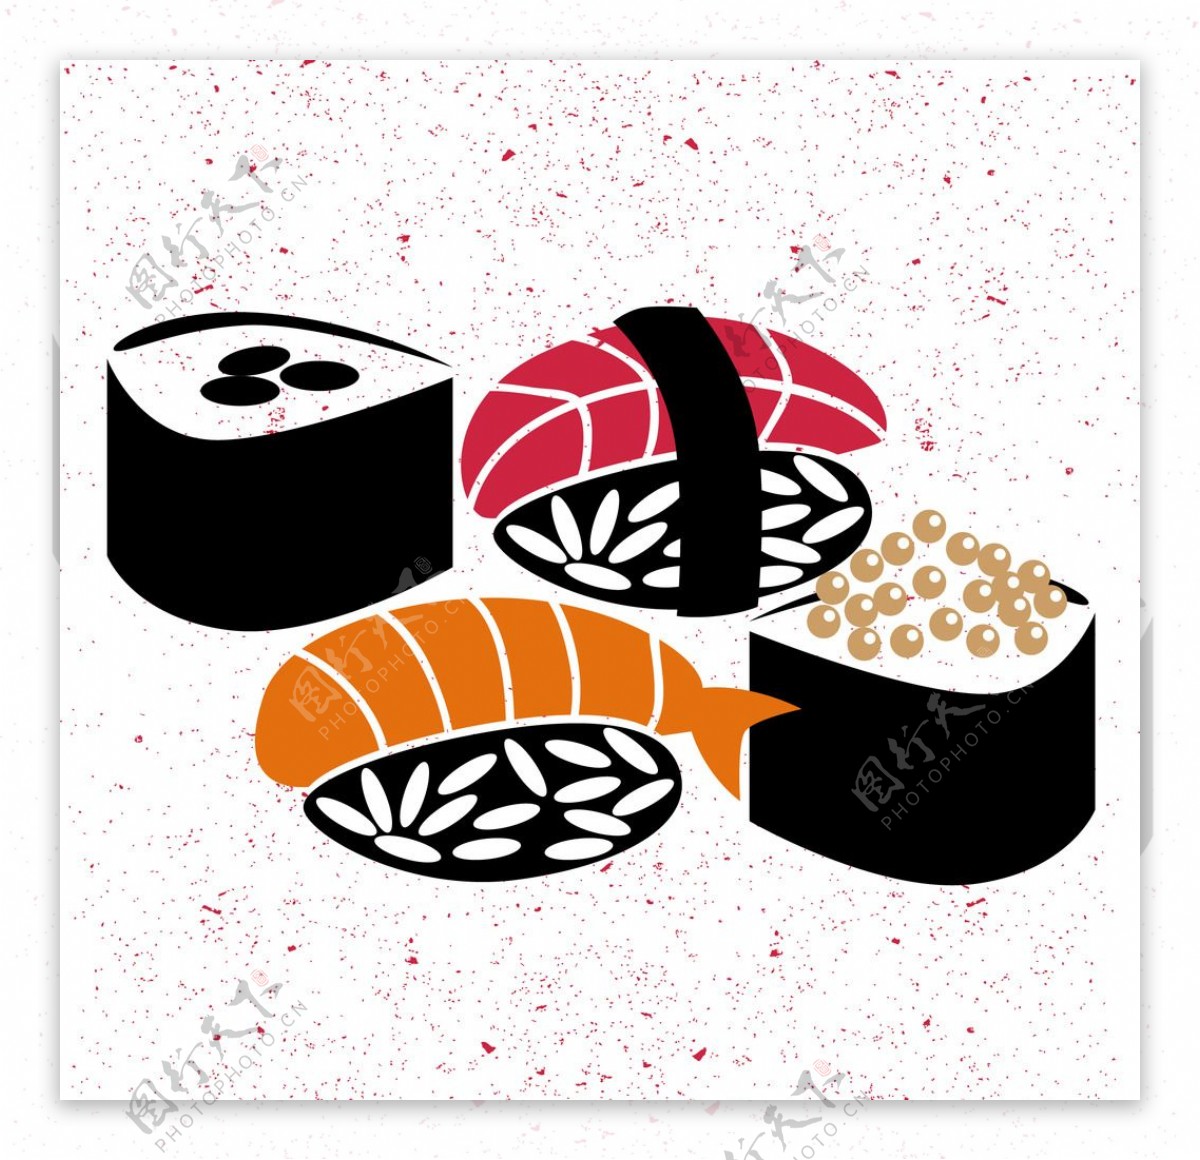 日本寿司矢量素材图片